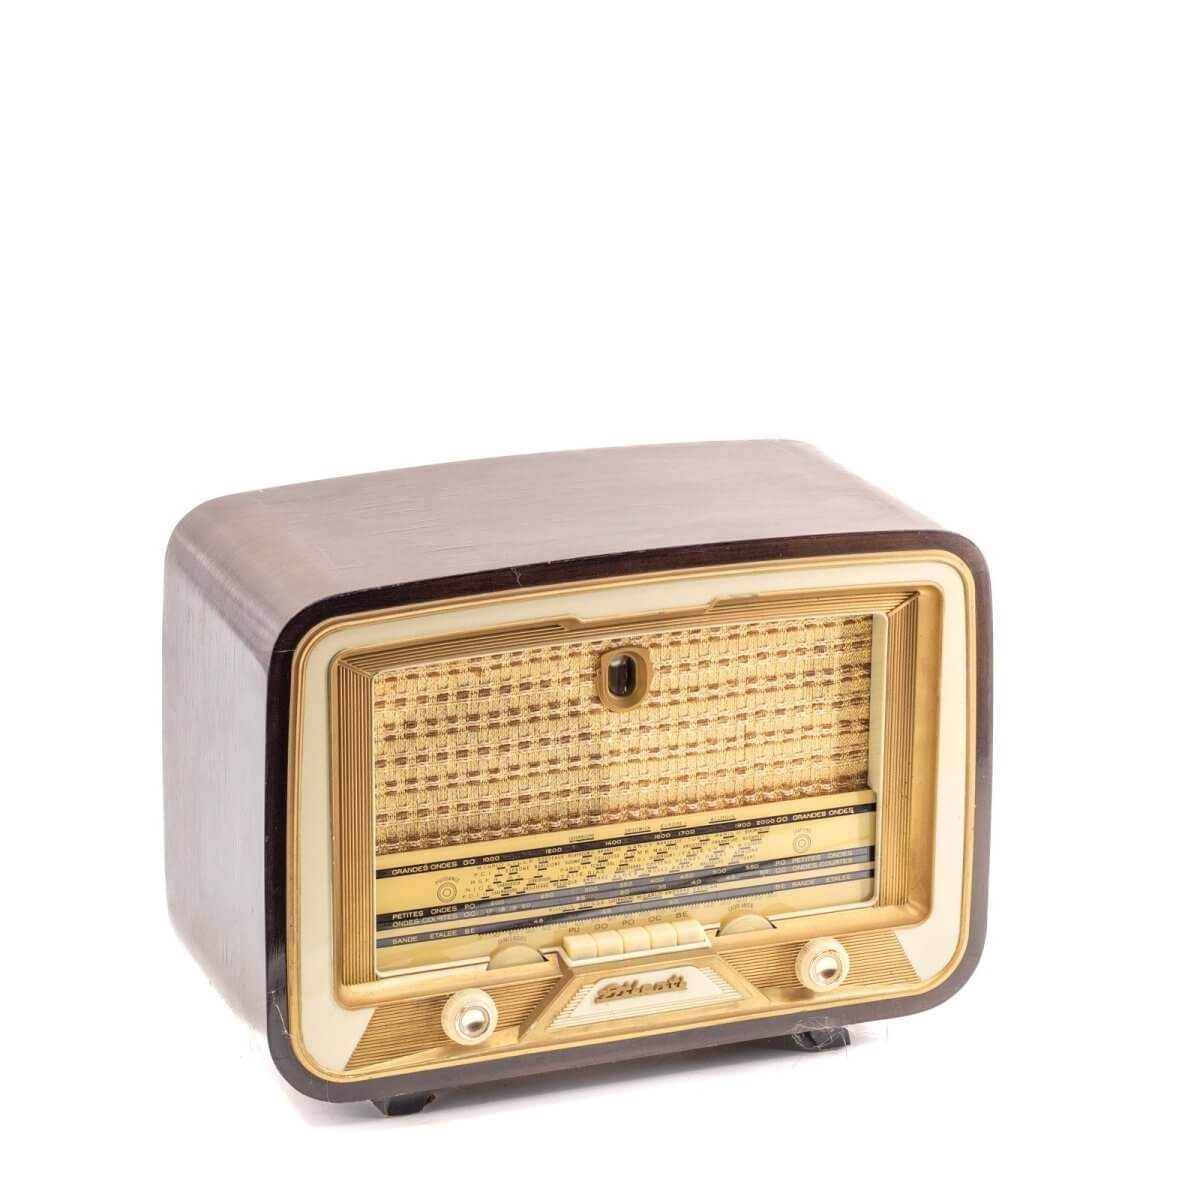 Radio Bluetooth Atlantic Vintage 50’S-A.bsolument-enceintes-et-radios-vintage-bluetooth